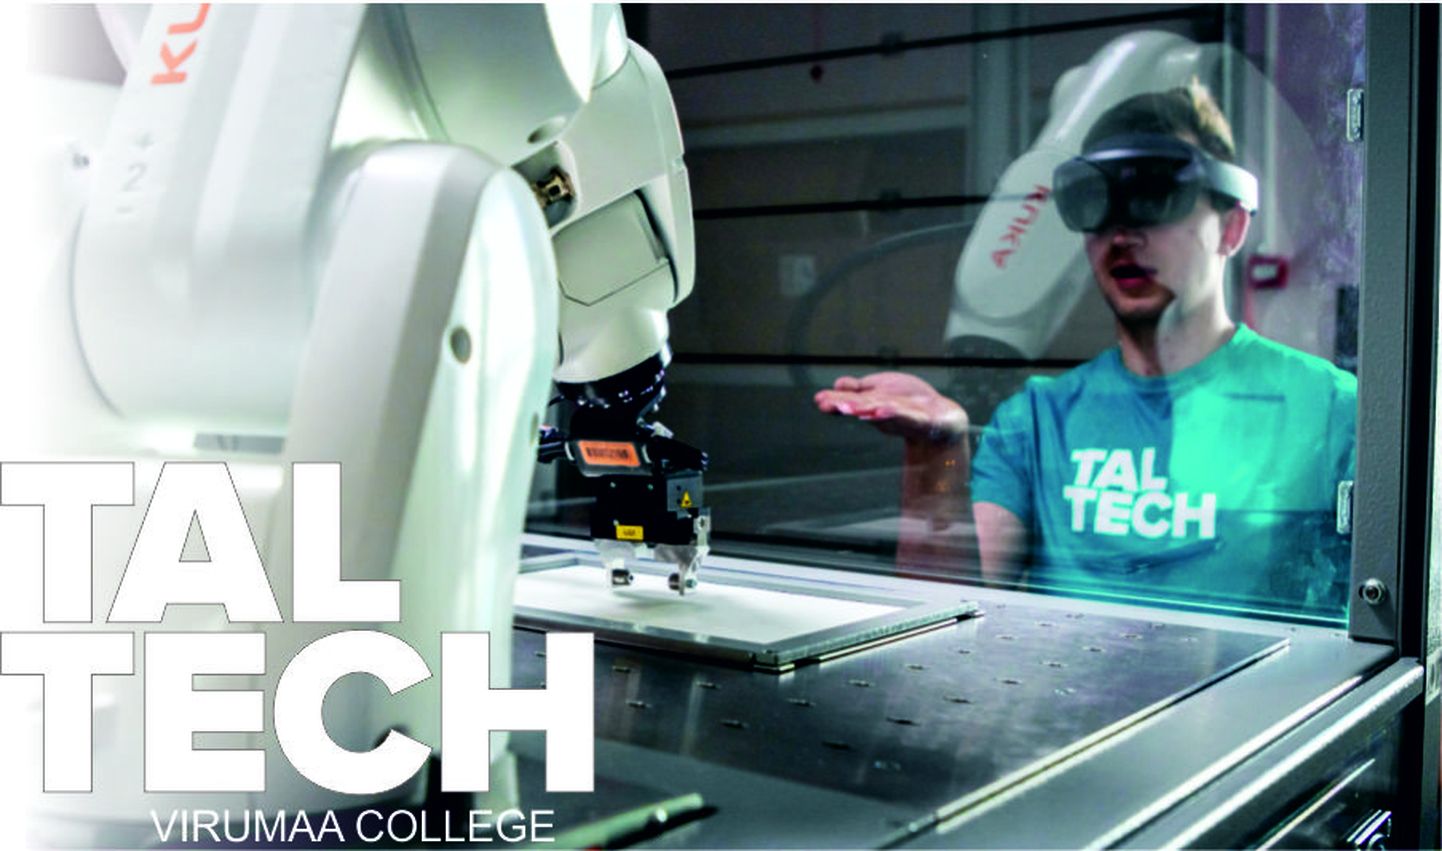 Вирумааский колледж TalTech придает большое значение инженерному образованию.